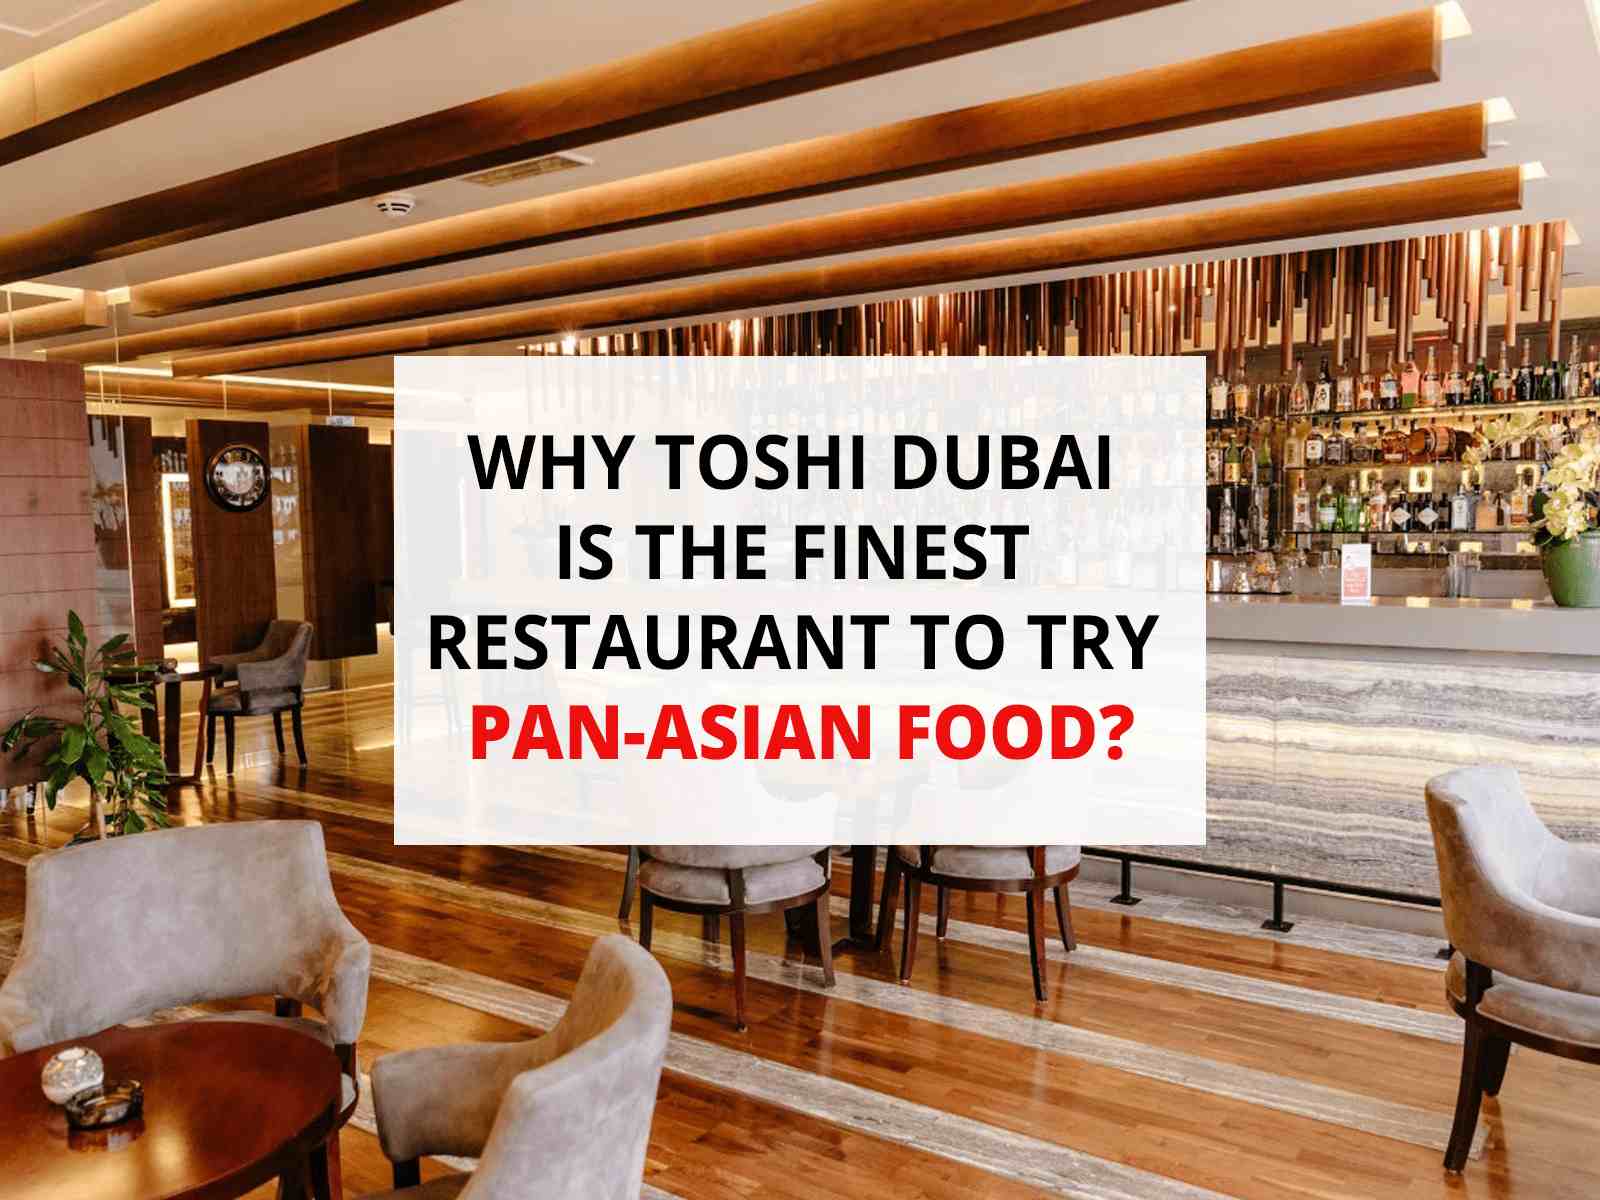 Toshi Dubai